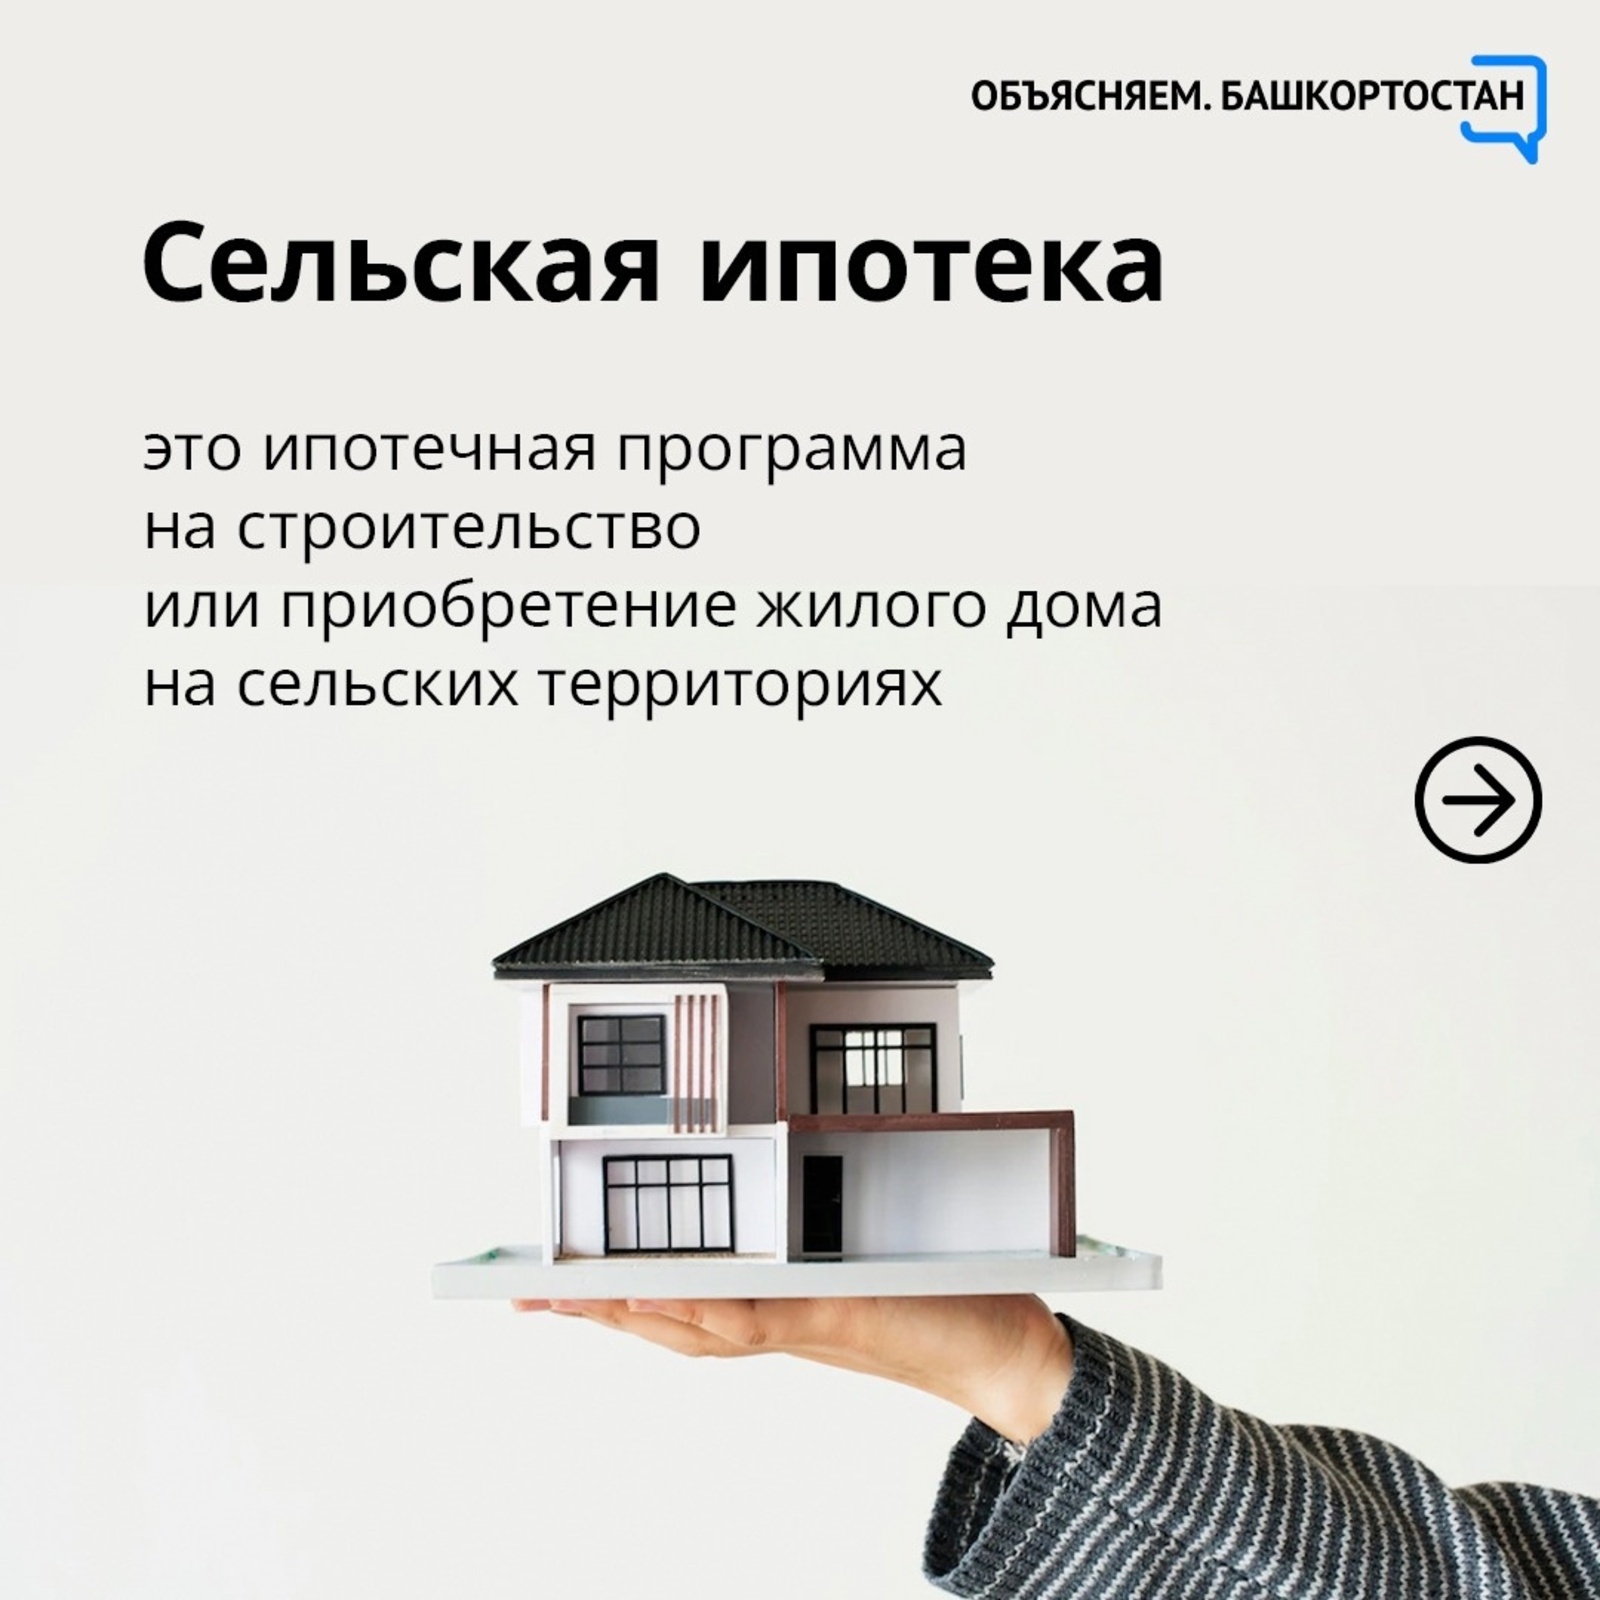 Теперь ещё больше жителей Башкортостана смогут улучшить свои жилищные условия